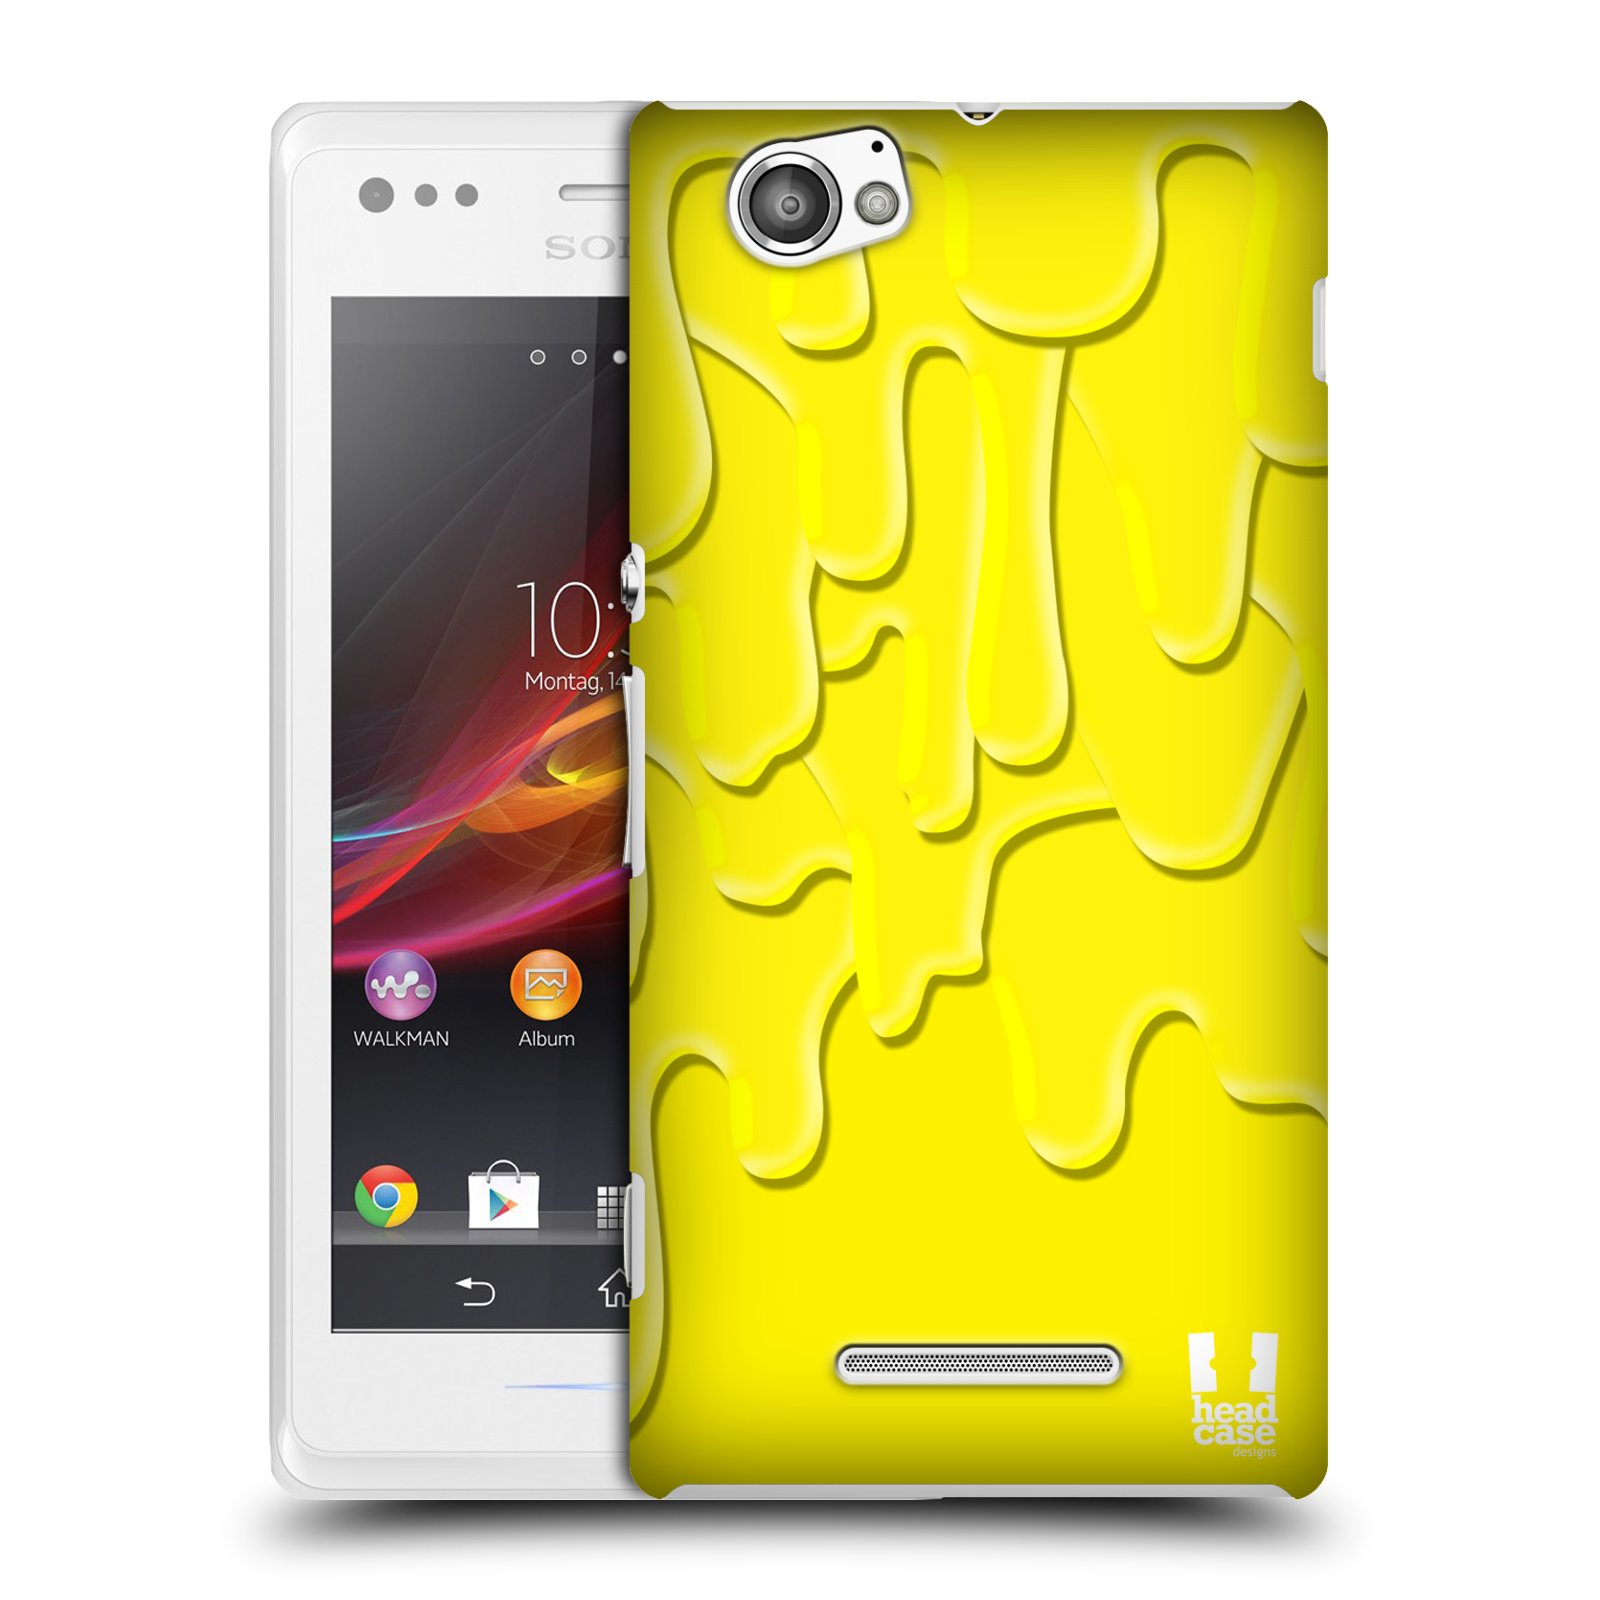 HEAD CASE plastový obal na mobil Sony Xperia M vzor Barevná záplava žlutá